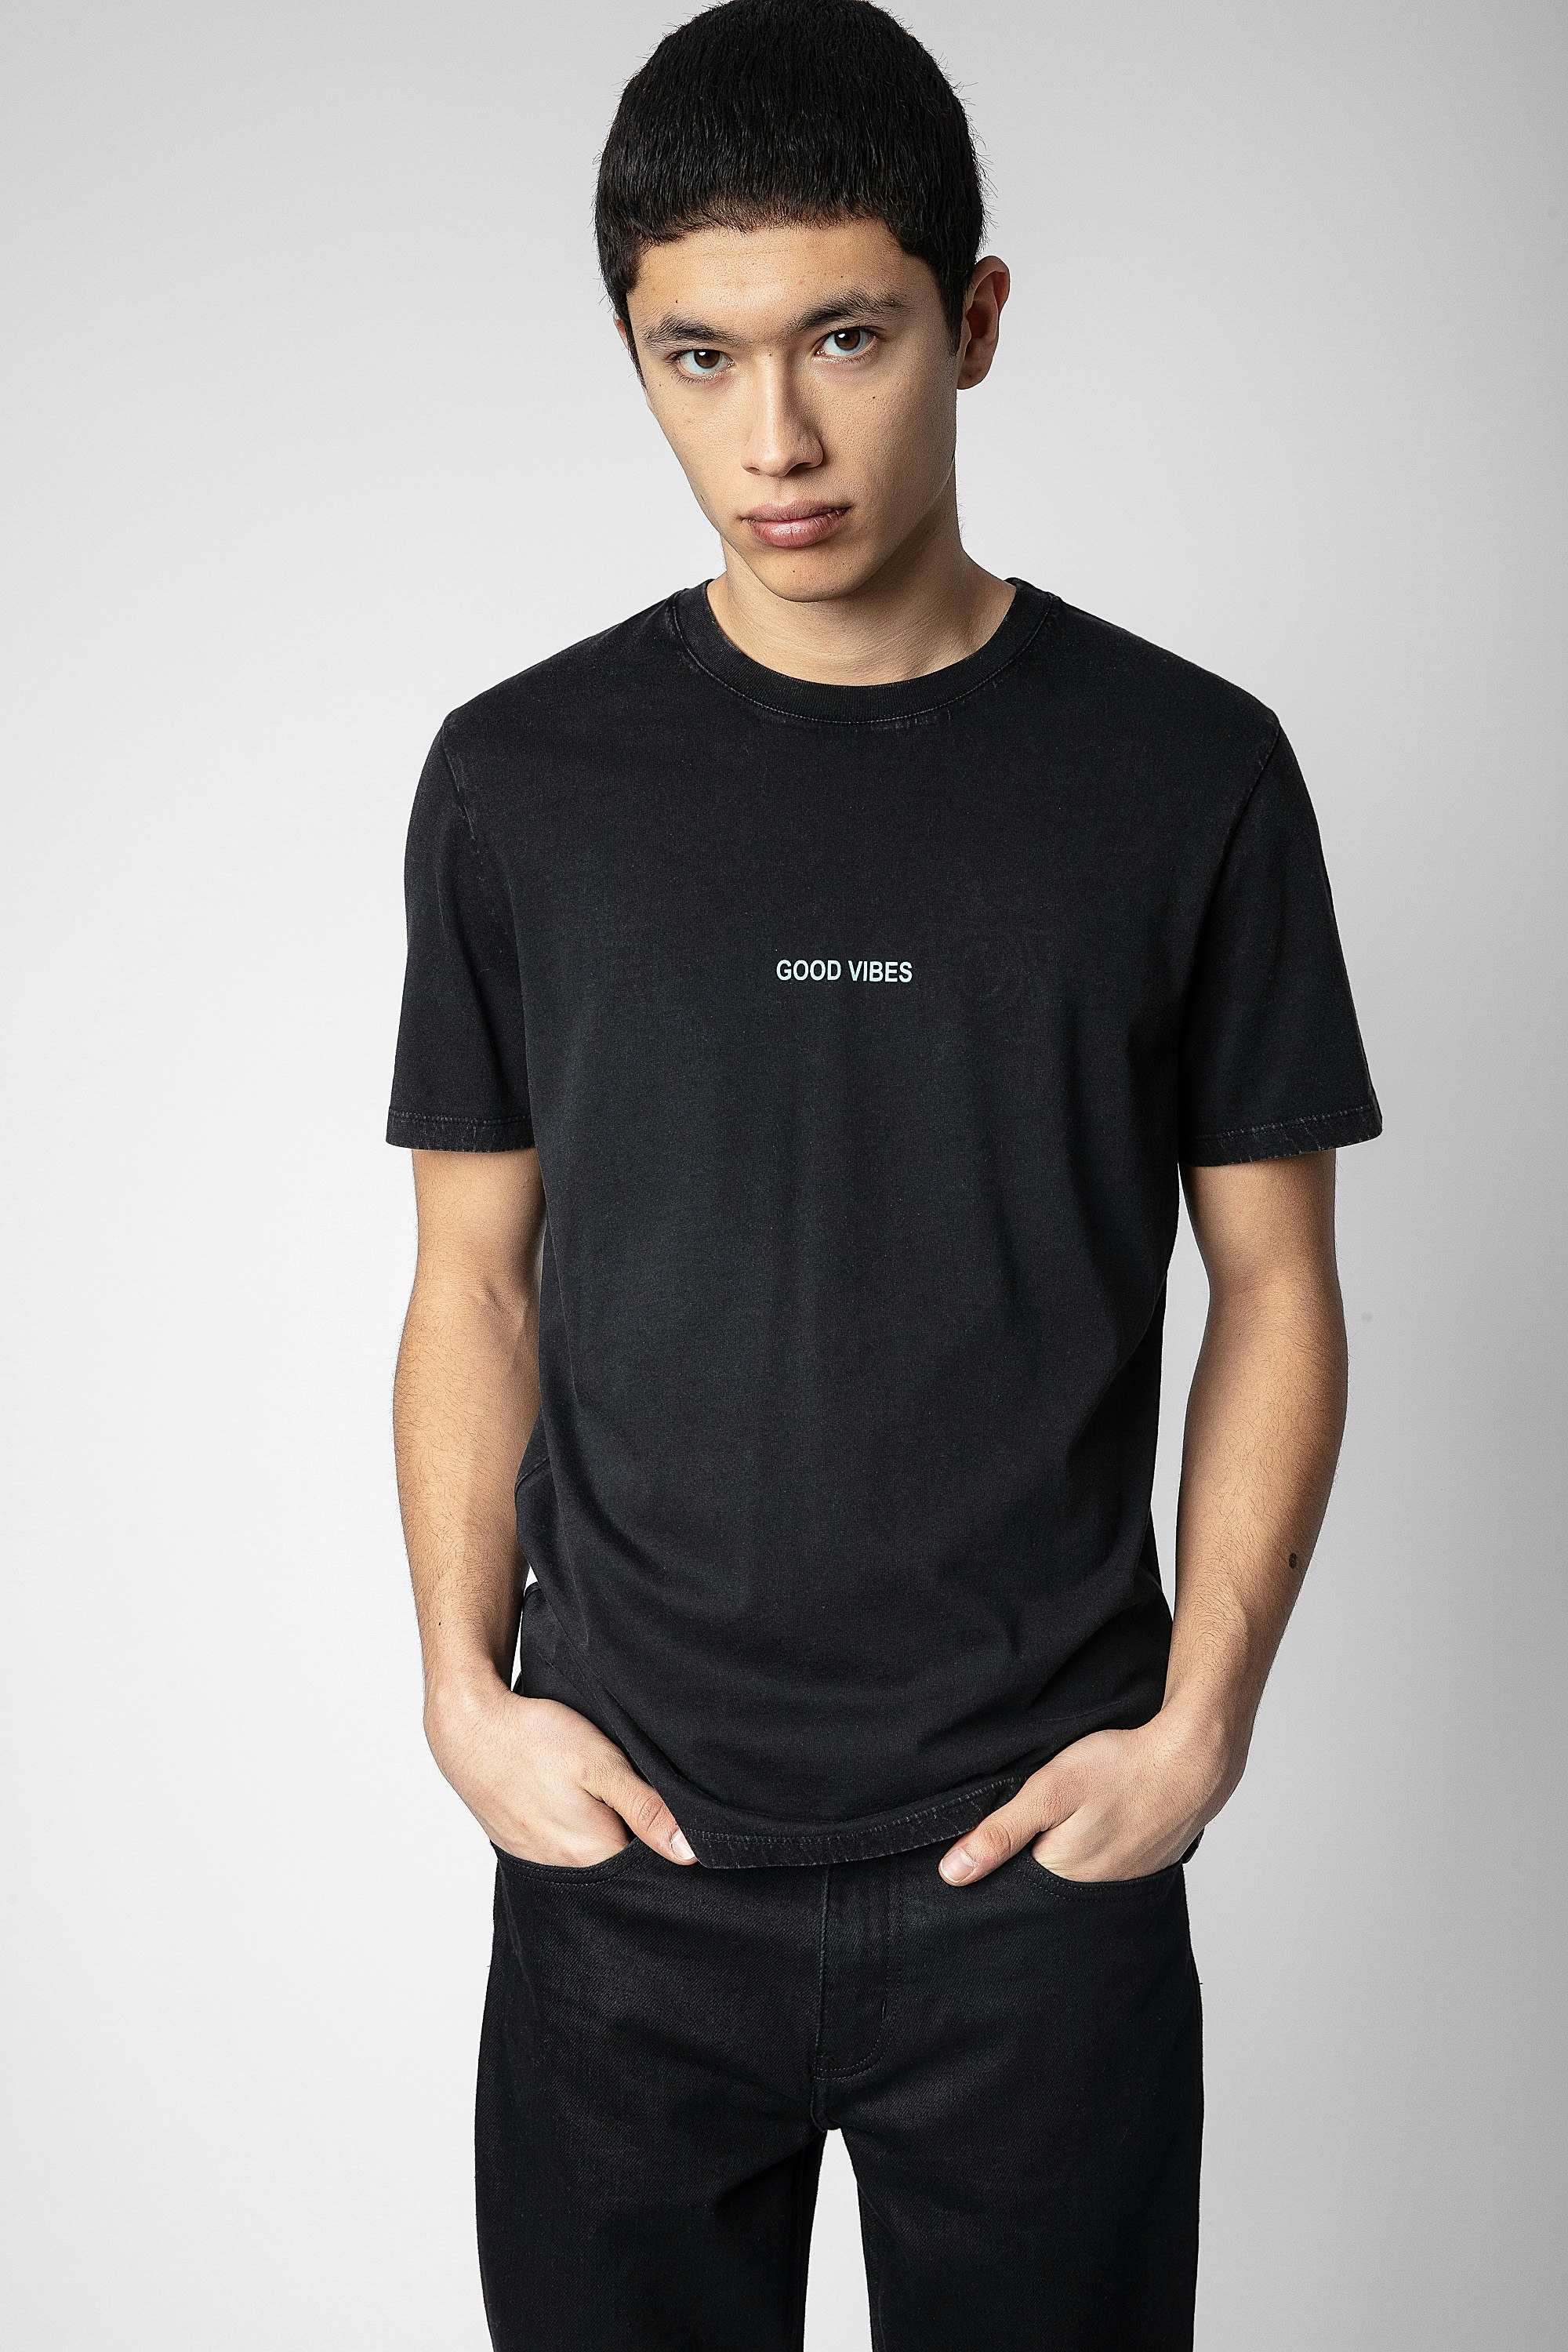 Ted Ｔシャツ - ブラックコットンTシャツ フロントに「Good Vibes」のメッセージ、バックにウィングとHappy Face Zadig